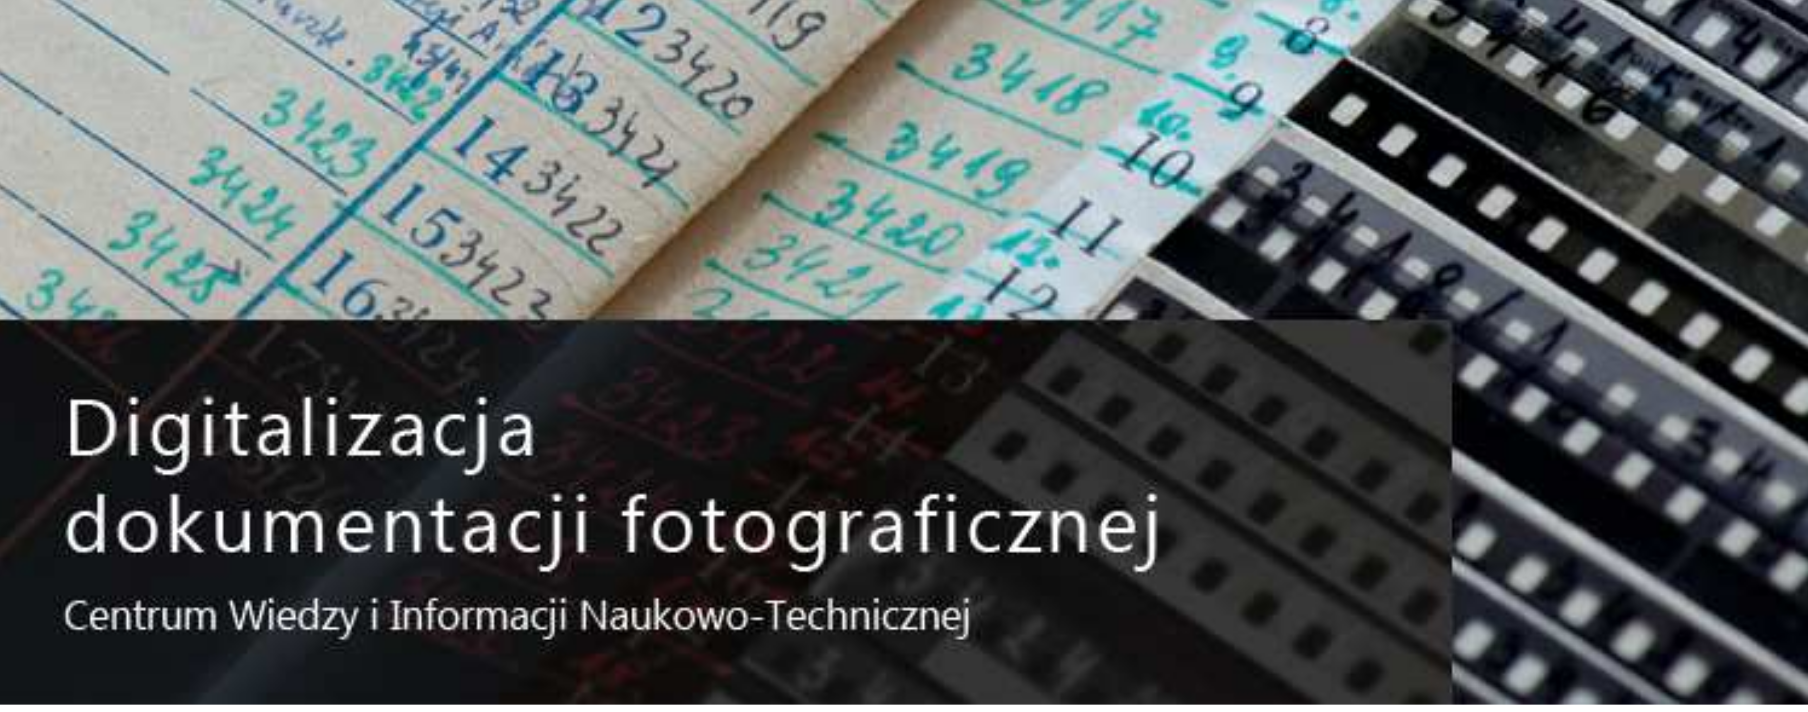 Logotyp projektu Digitalizacja dokumentacji fotograficznej. 